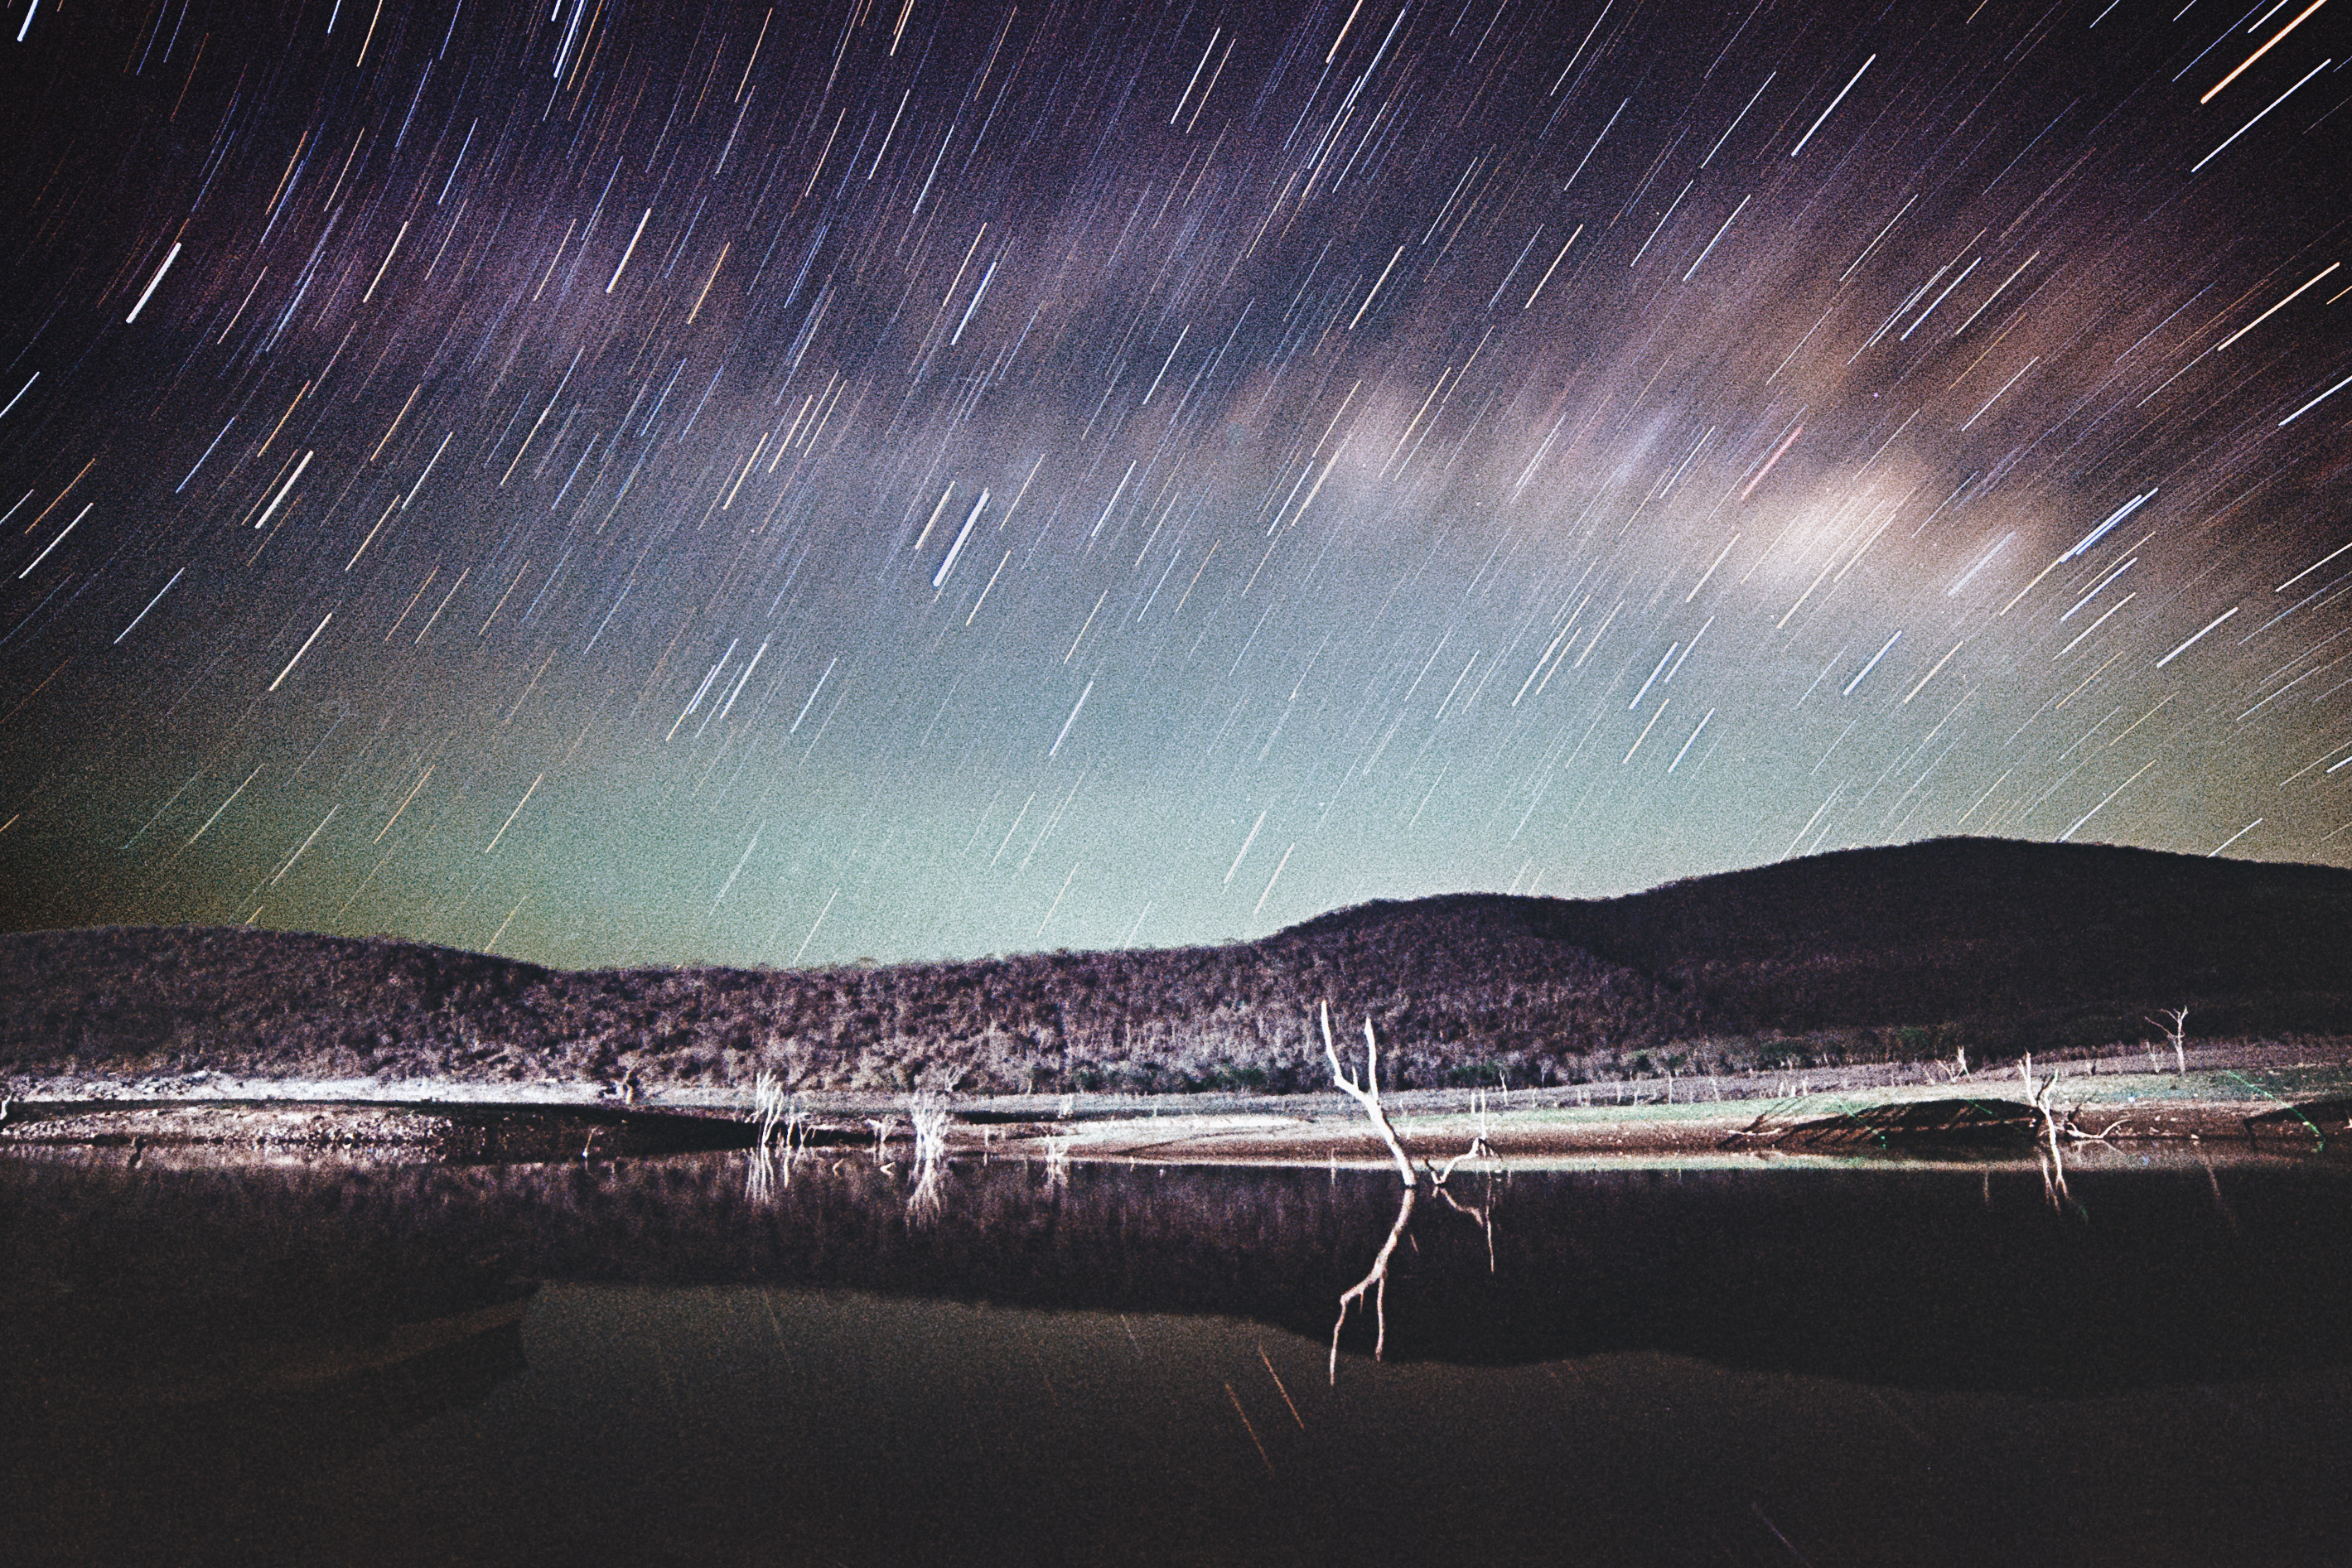 Star trails de la vía láctea sobre el lago El Salgo – Kodak Portra 800